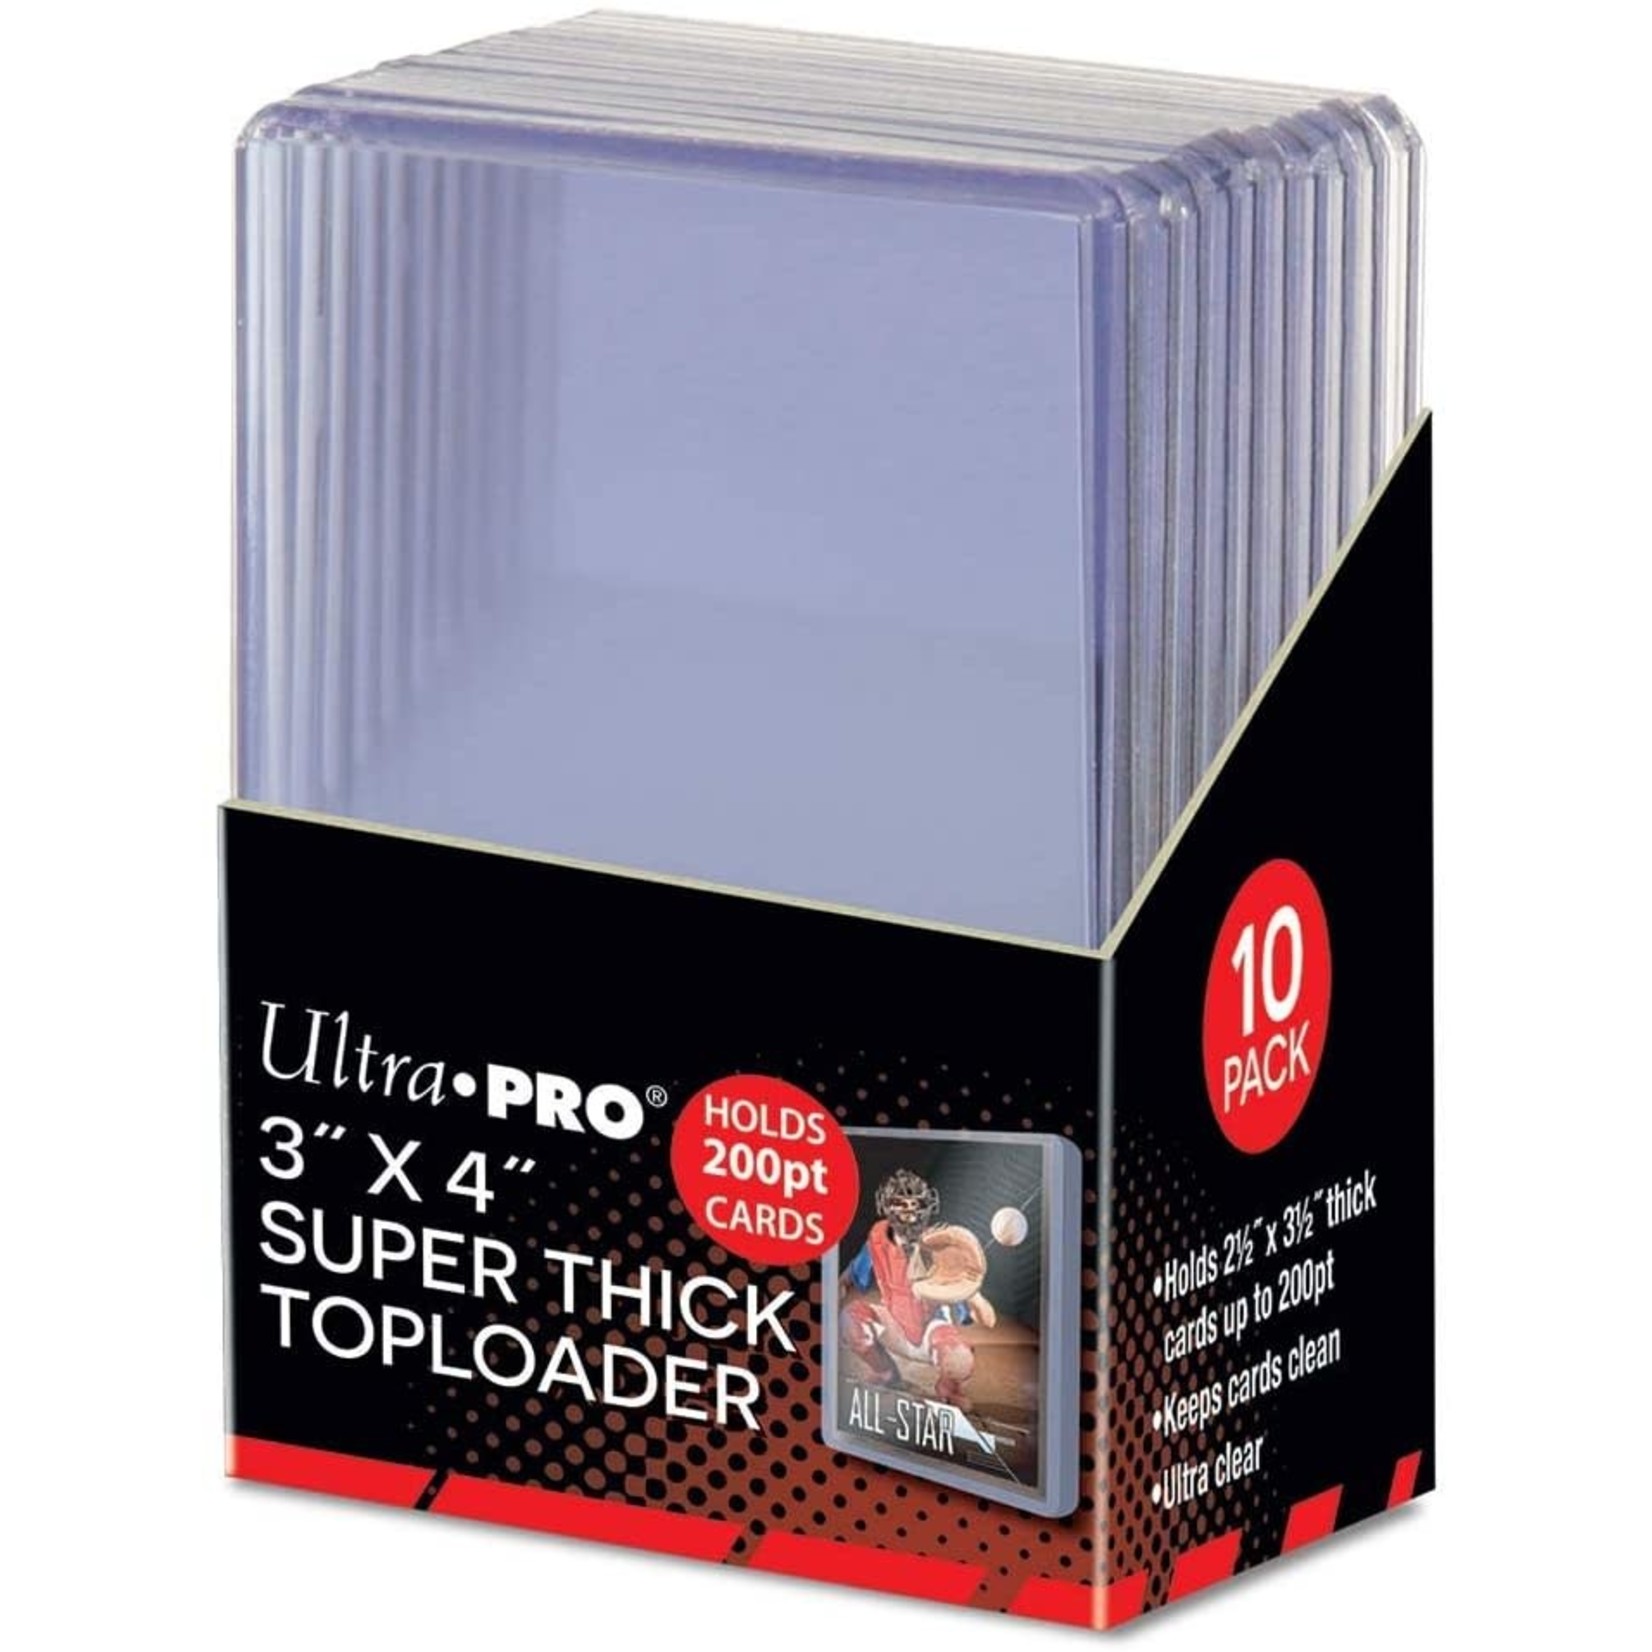 Ultra Pro Super Thick Toploader  200pt